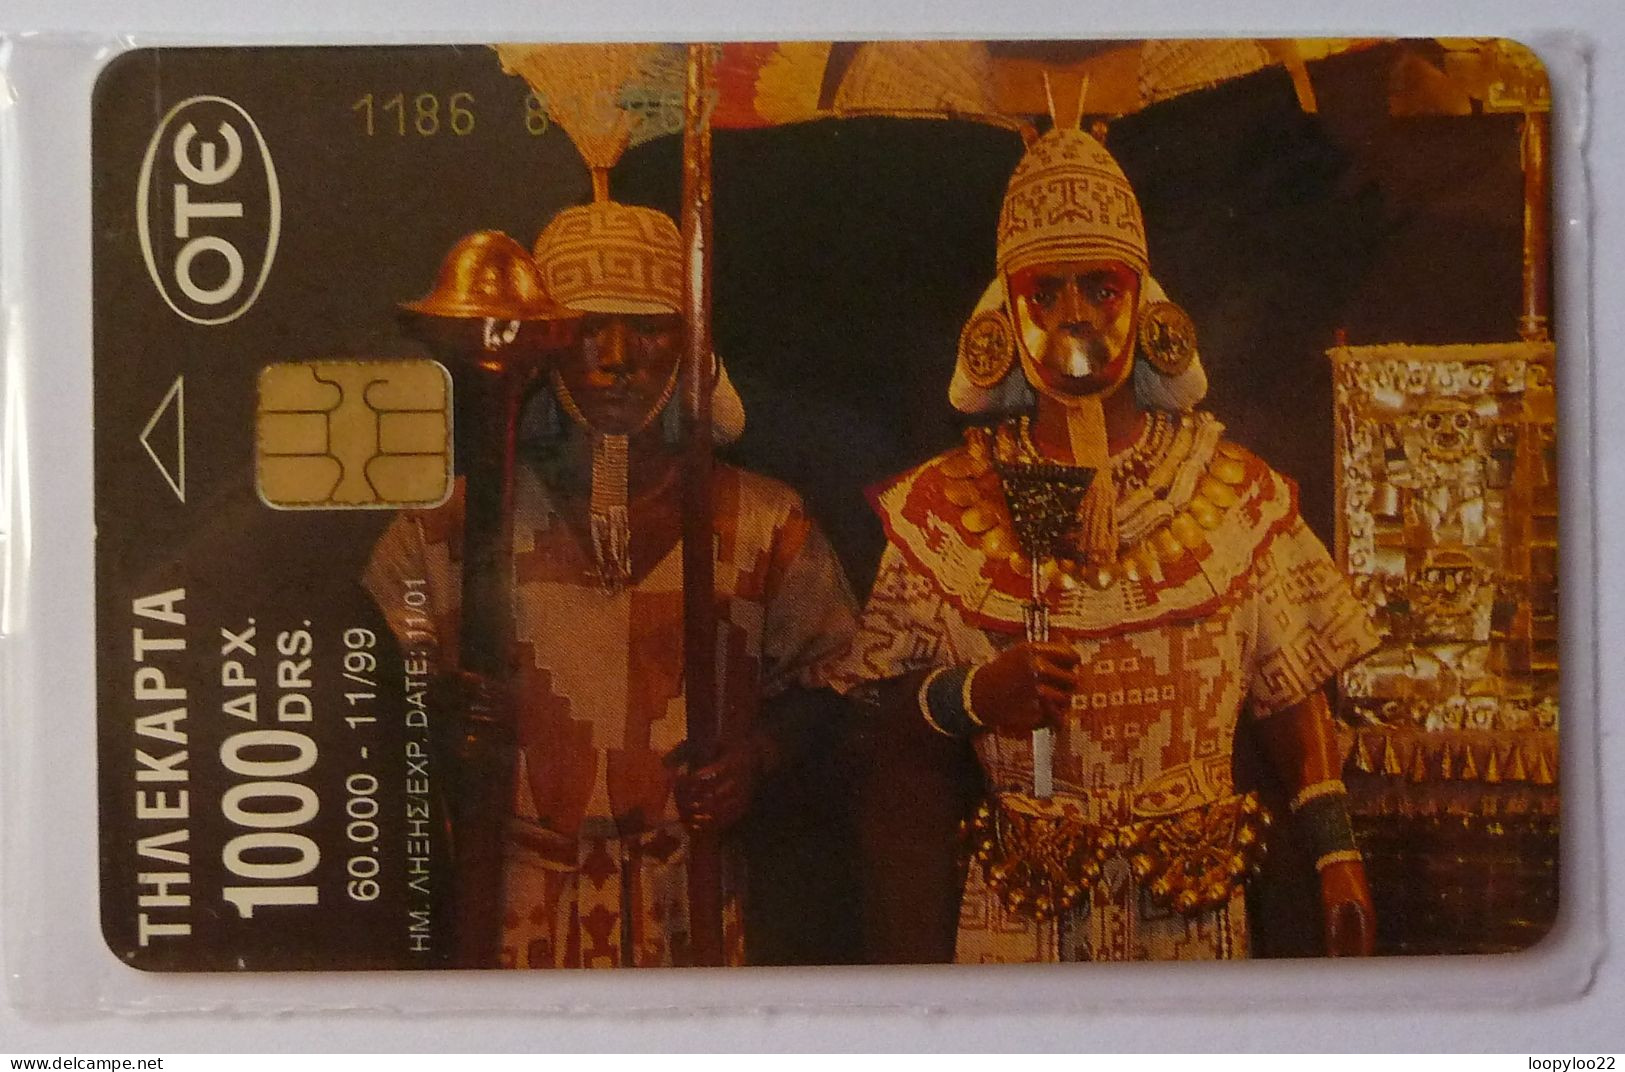 GREECE - Chip - OTE - Millenium - Incas - 11/99 - 1000 Units - Mint Blister - Griechenland